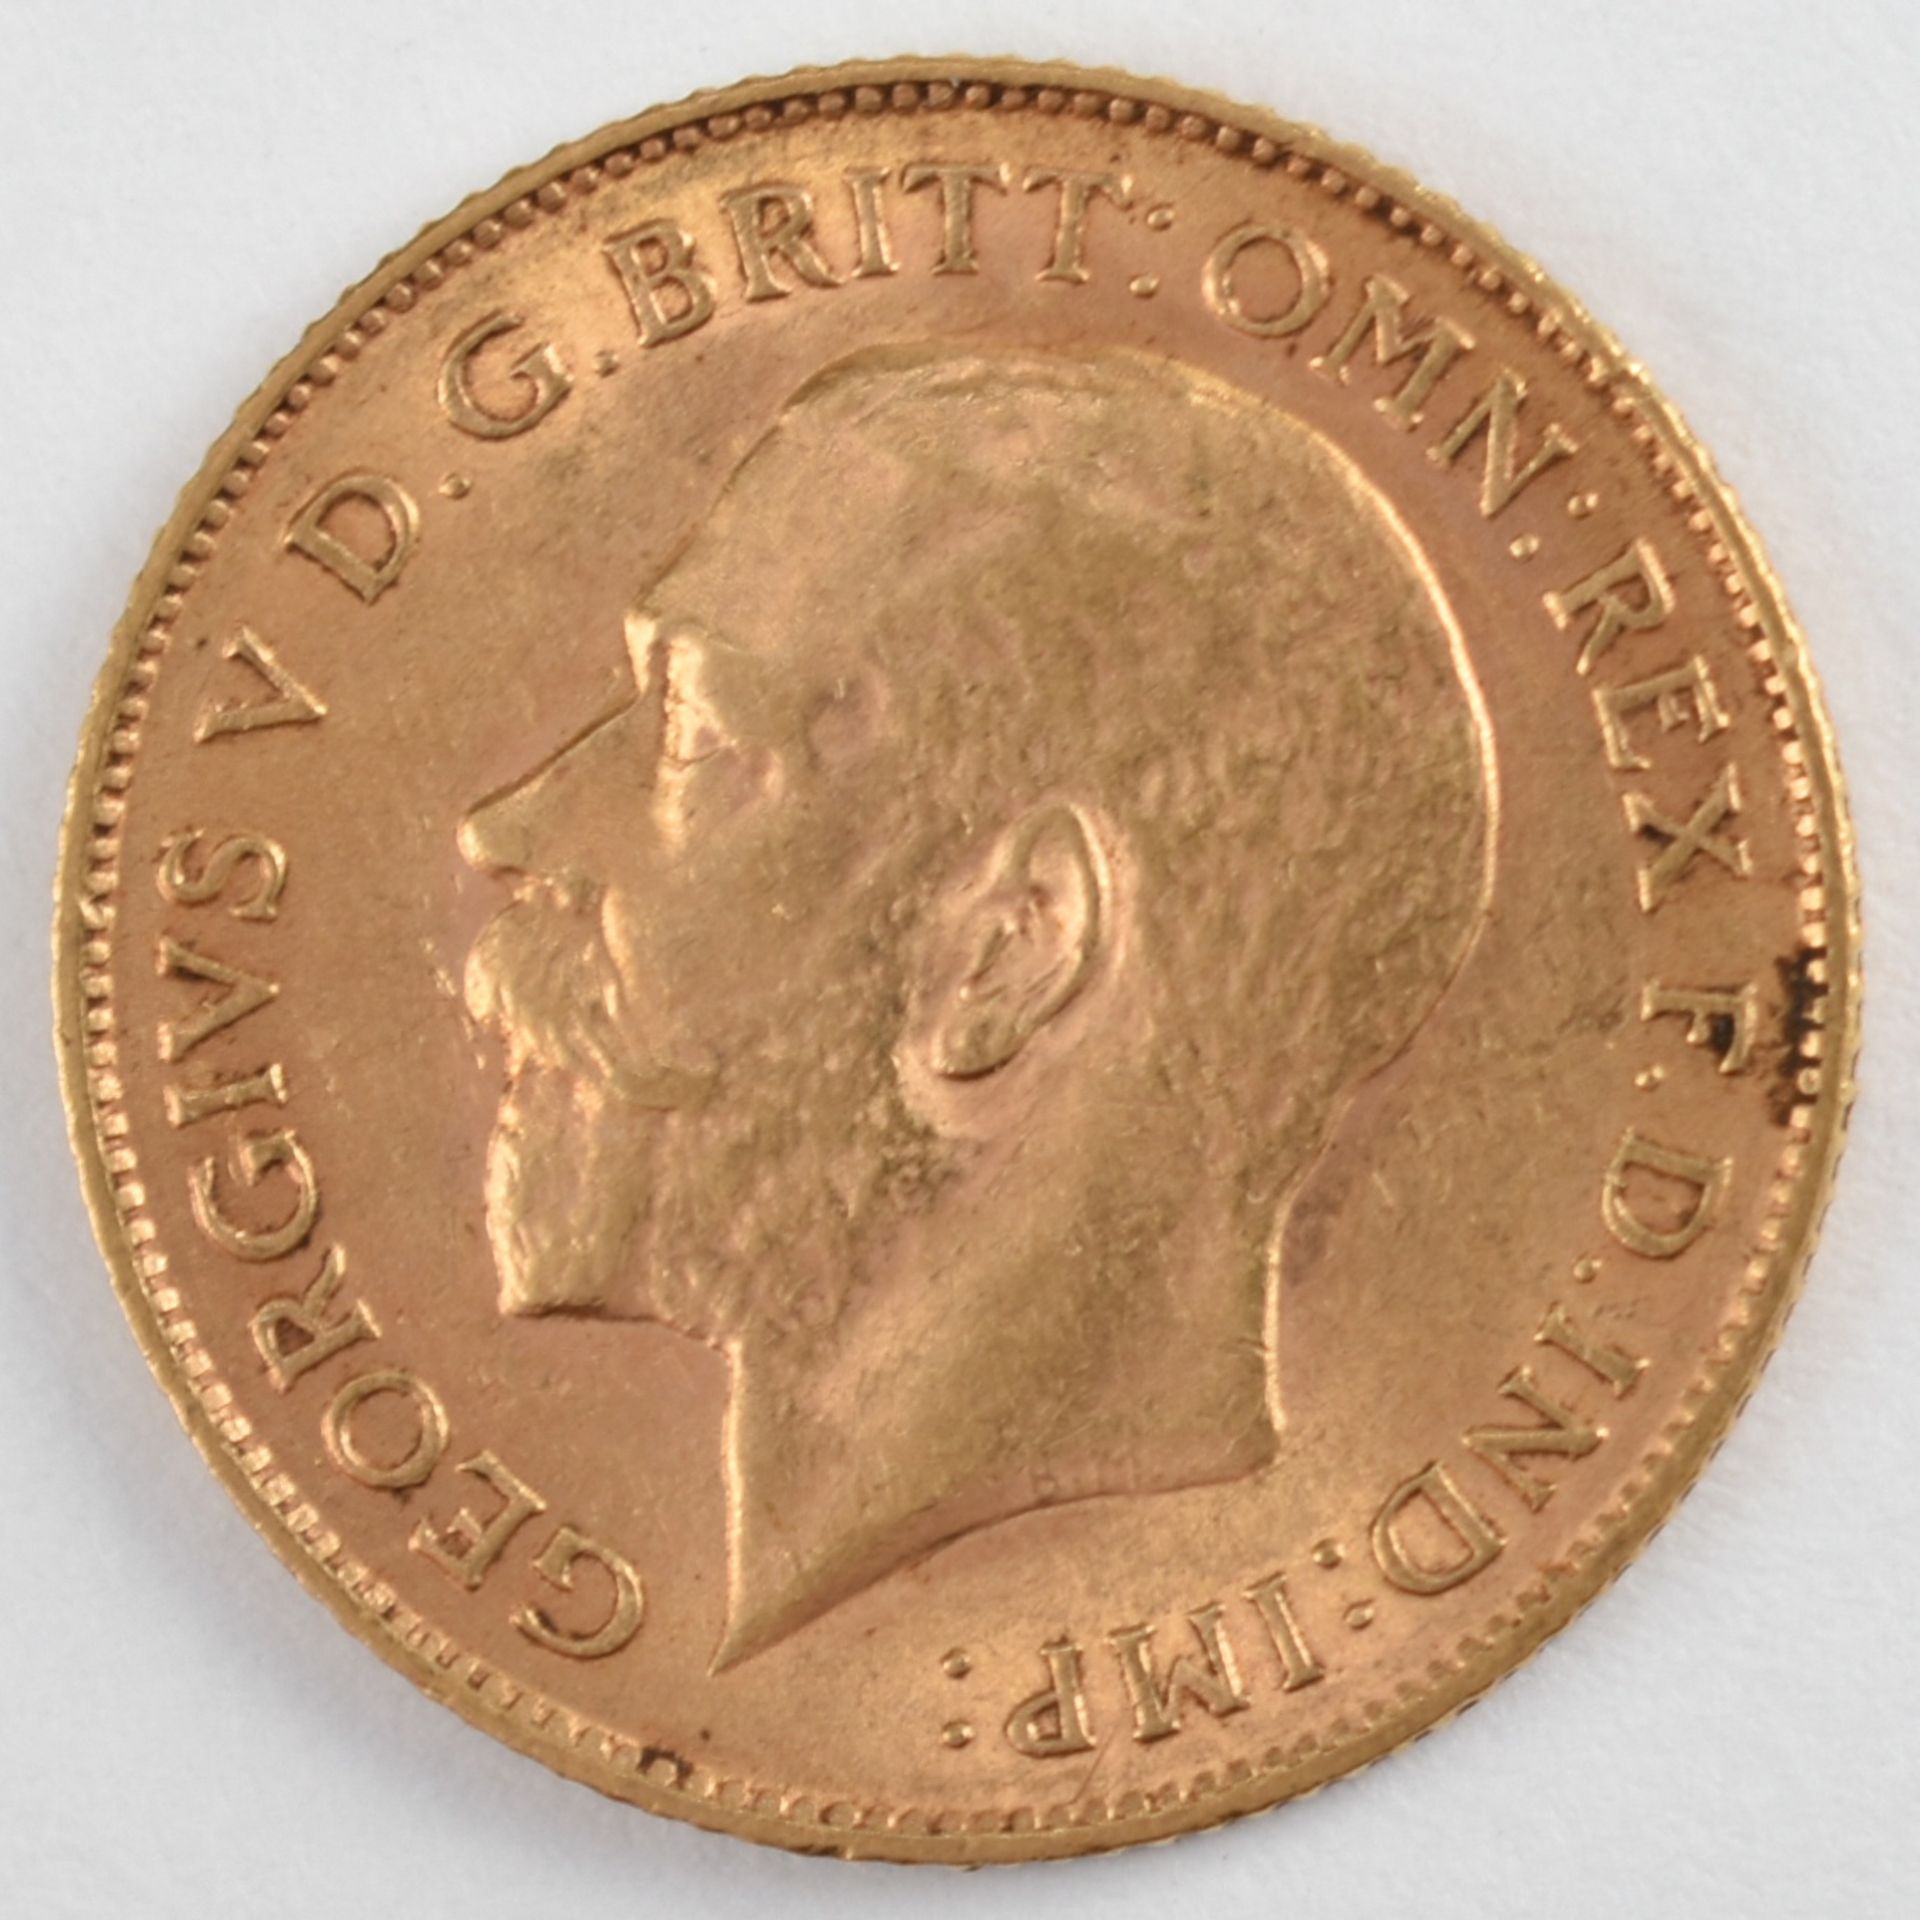 Goldmünze Großbritannien 1911 1/2 Sovereign - 1/2 Pfund in Gold, 3,994 g, 916/1000, D ca. 19,3 mm, - Bild 3 aus 3